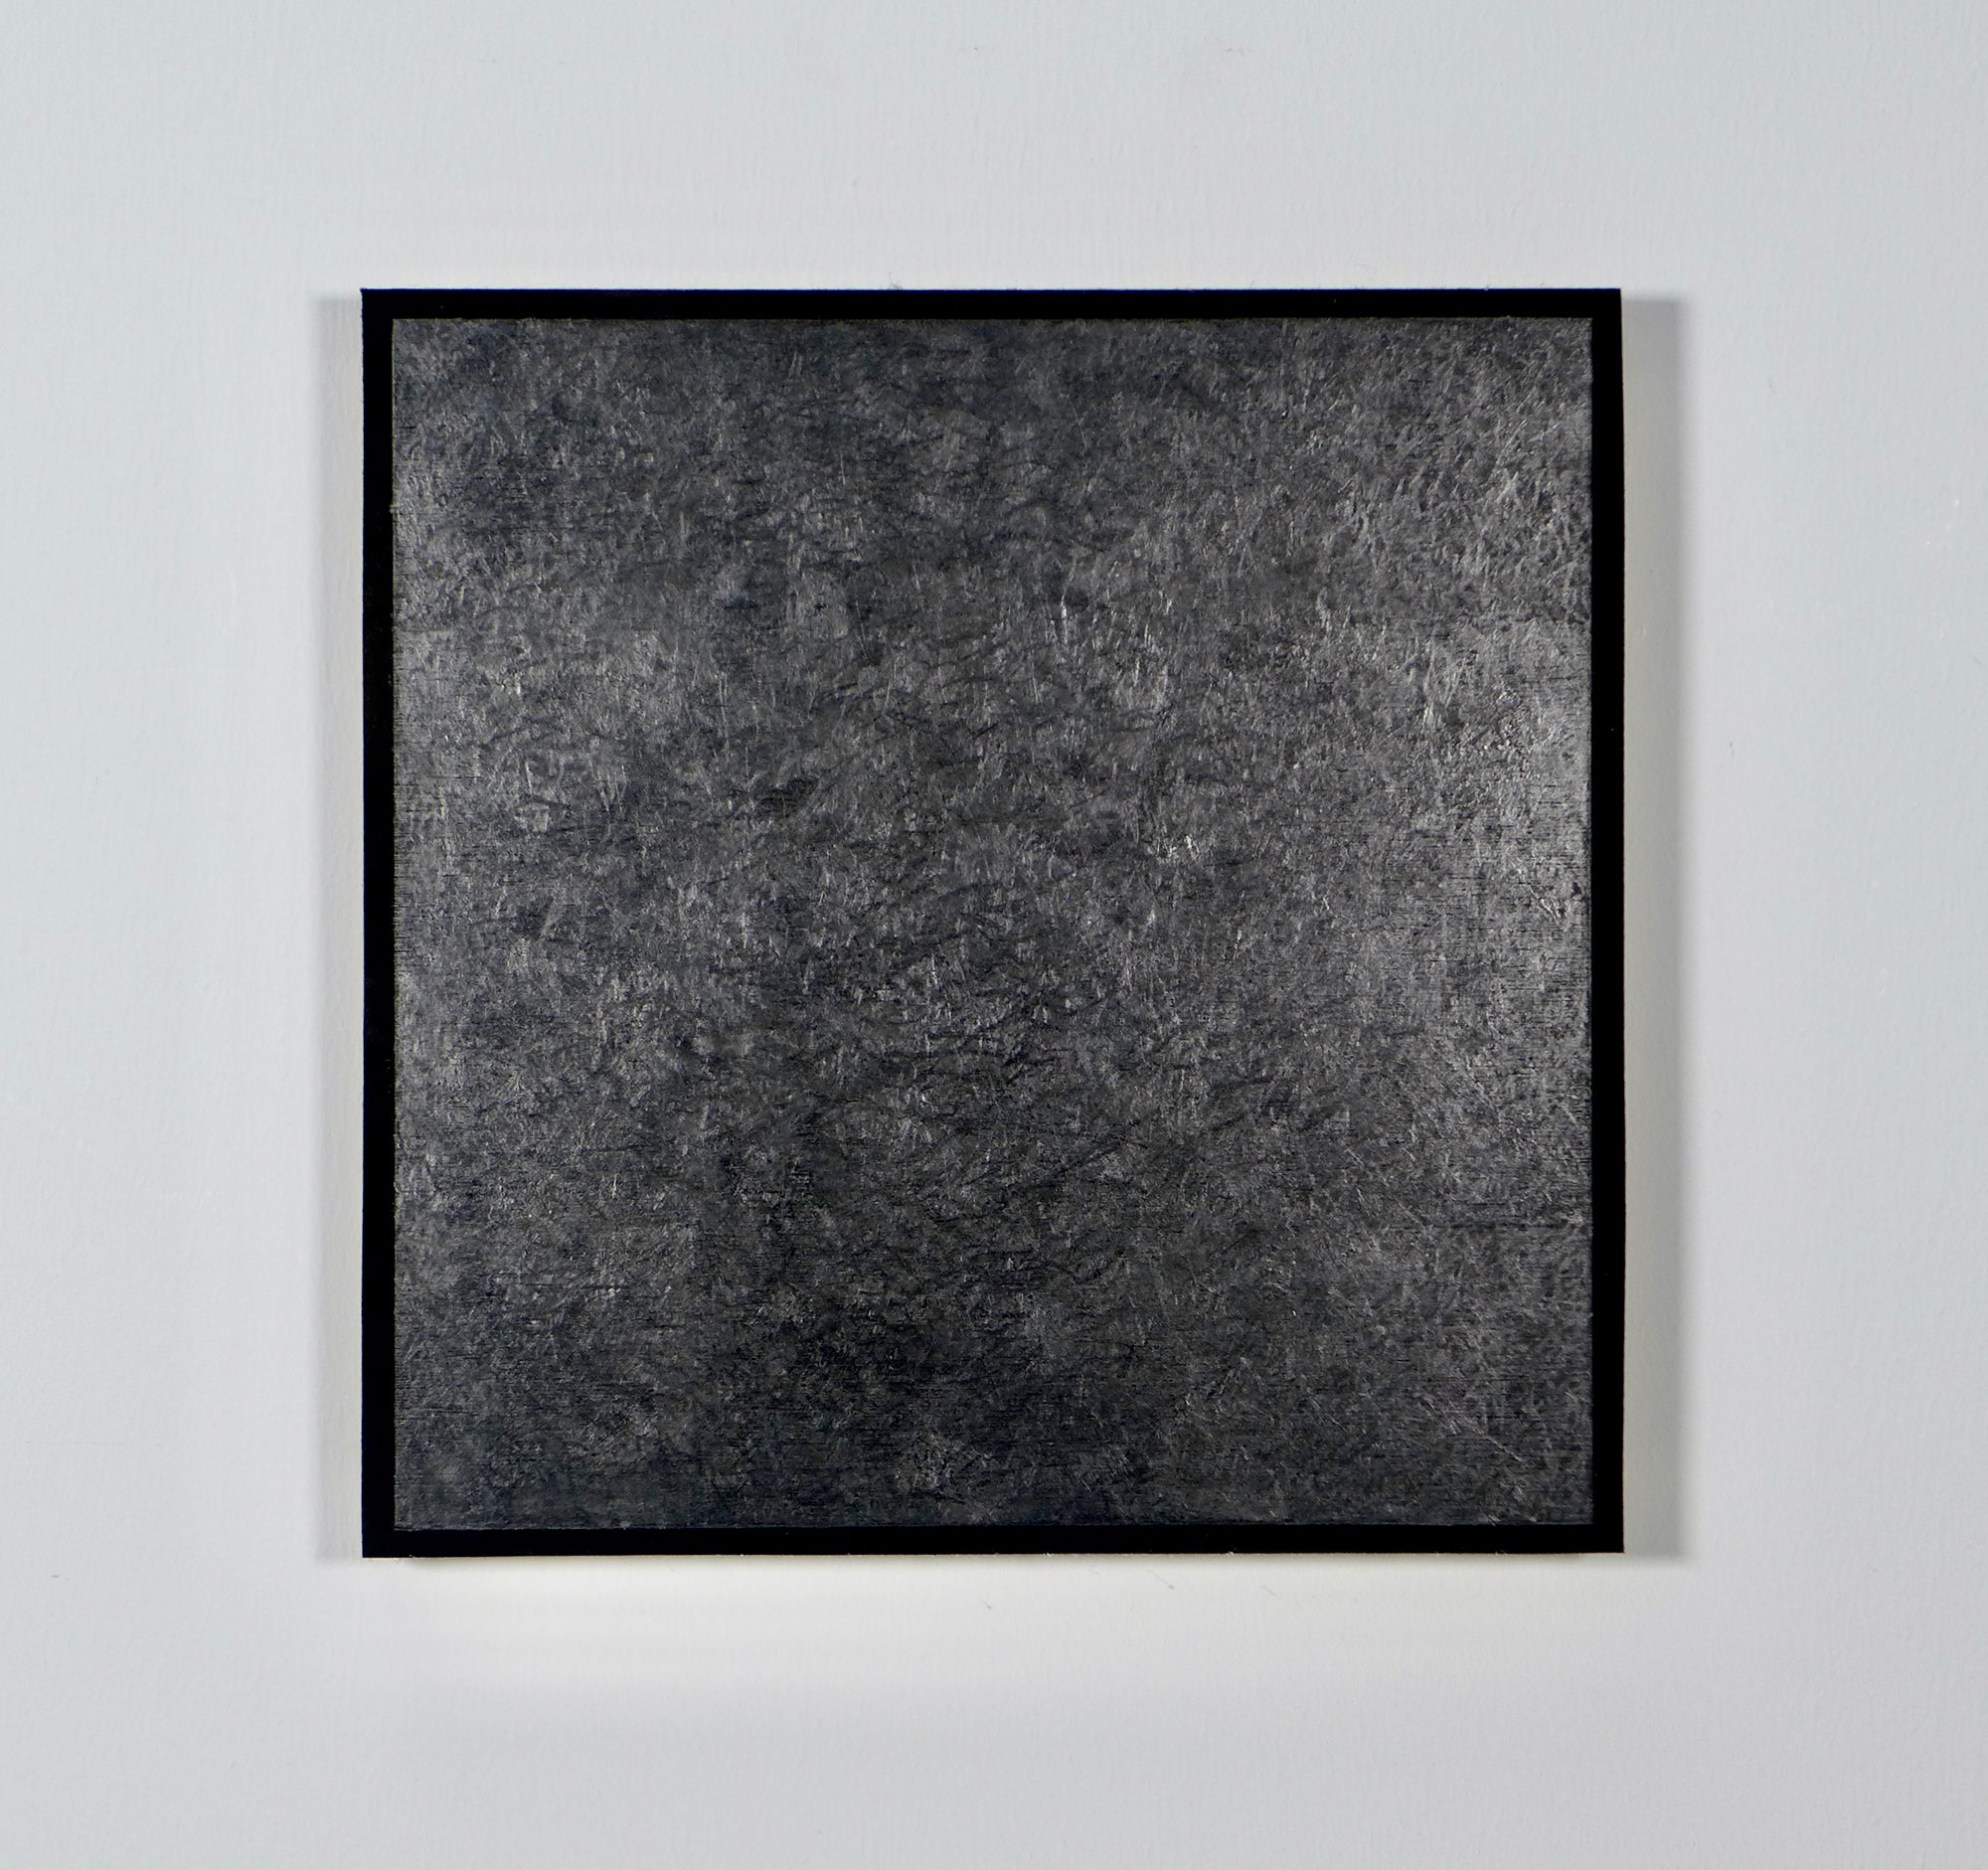 Kenneth Dingwall, Kasein Schwarz V, 2012, casein and graphite on panel, 26.5cm x 26.5cm x 2cm